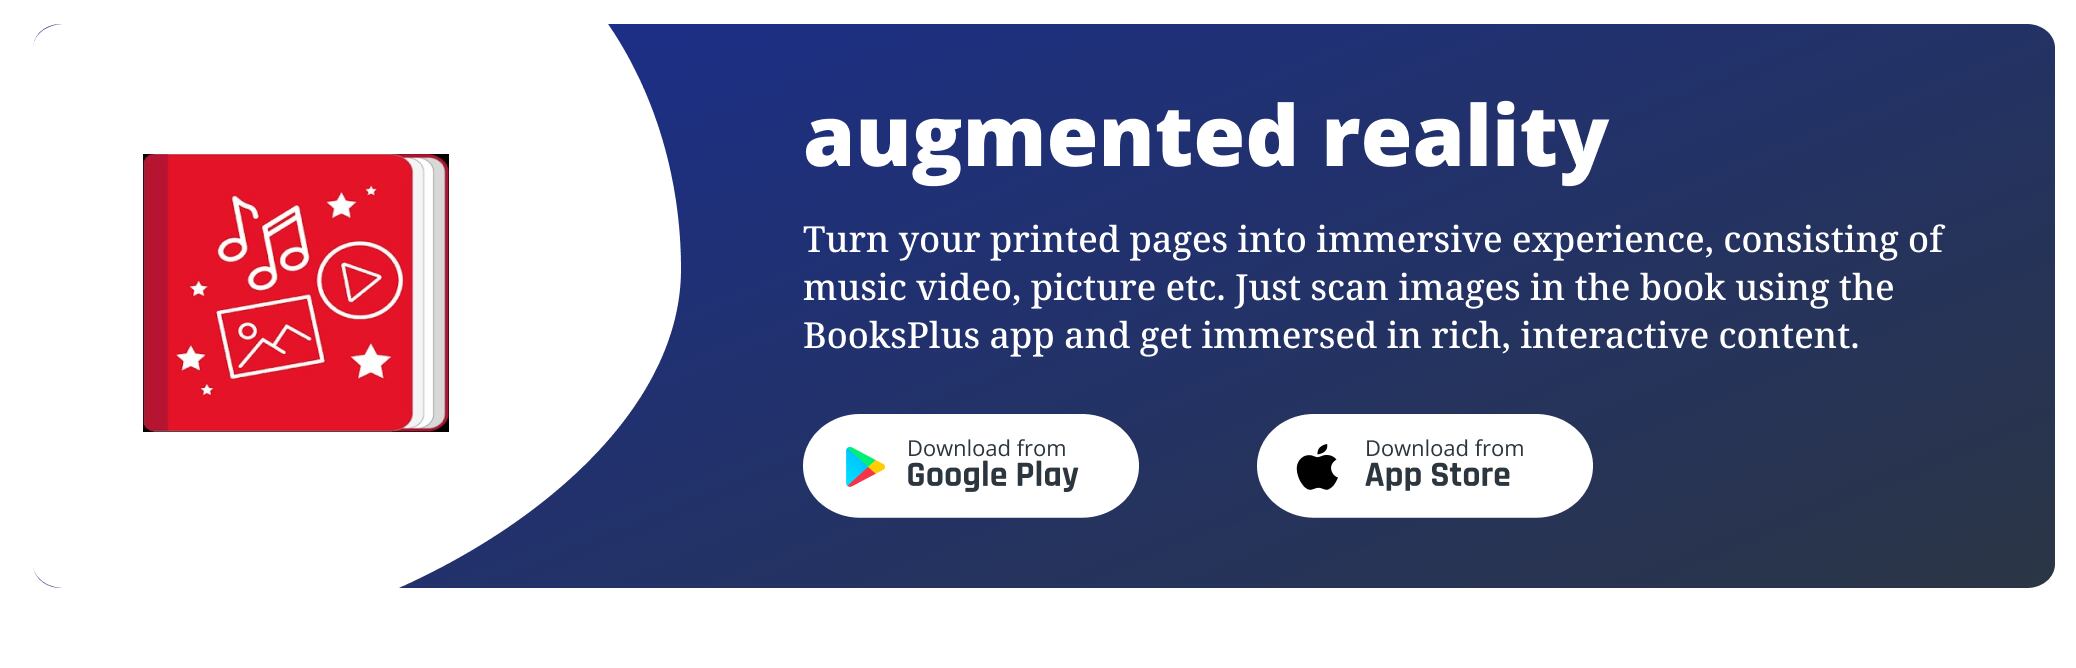 books plus apps